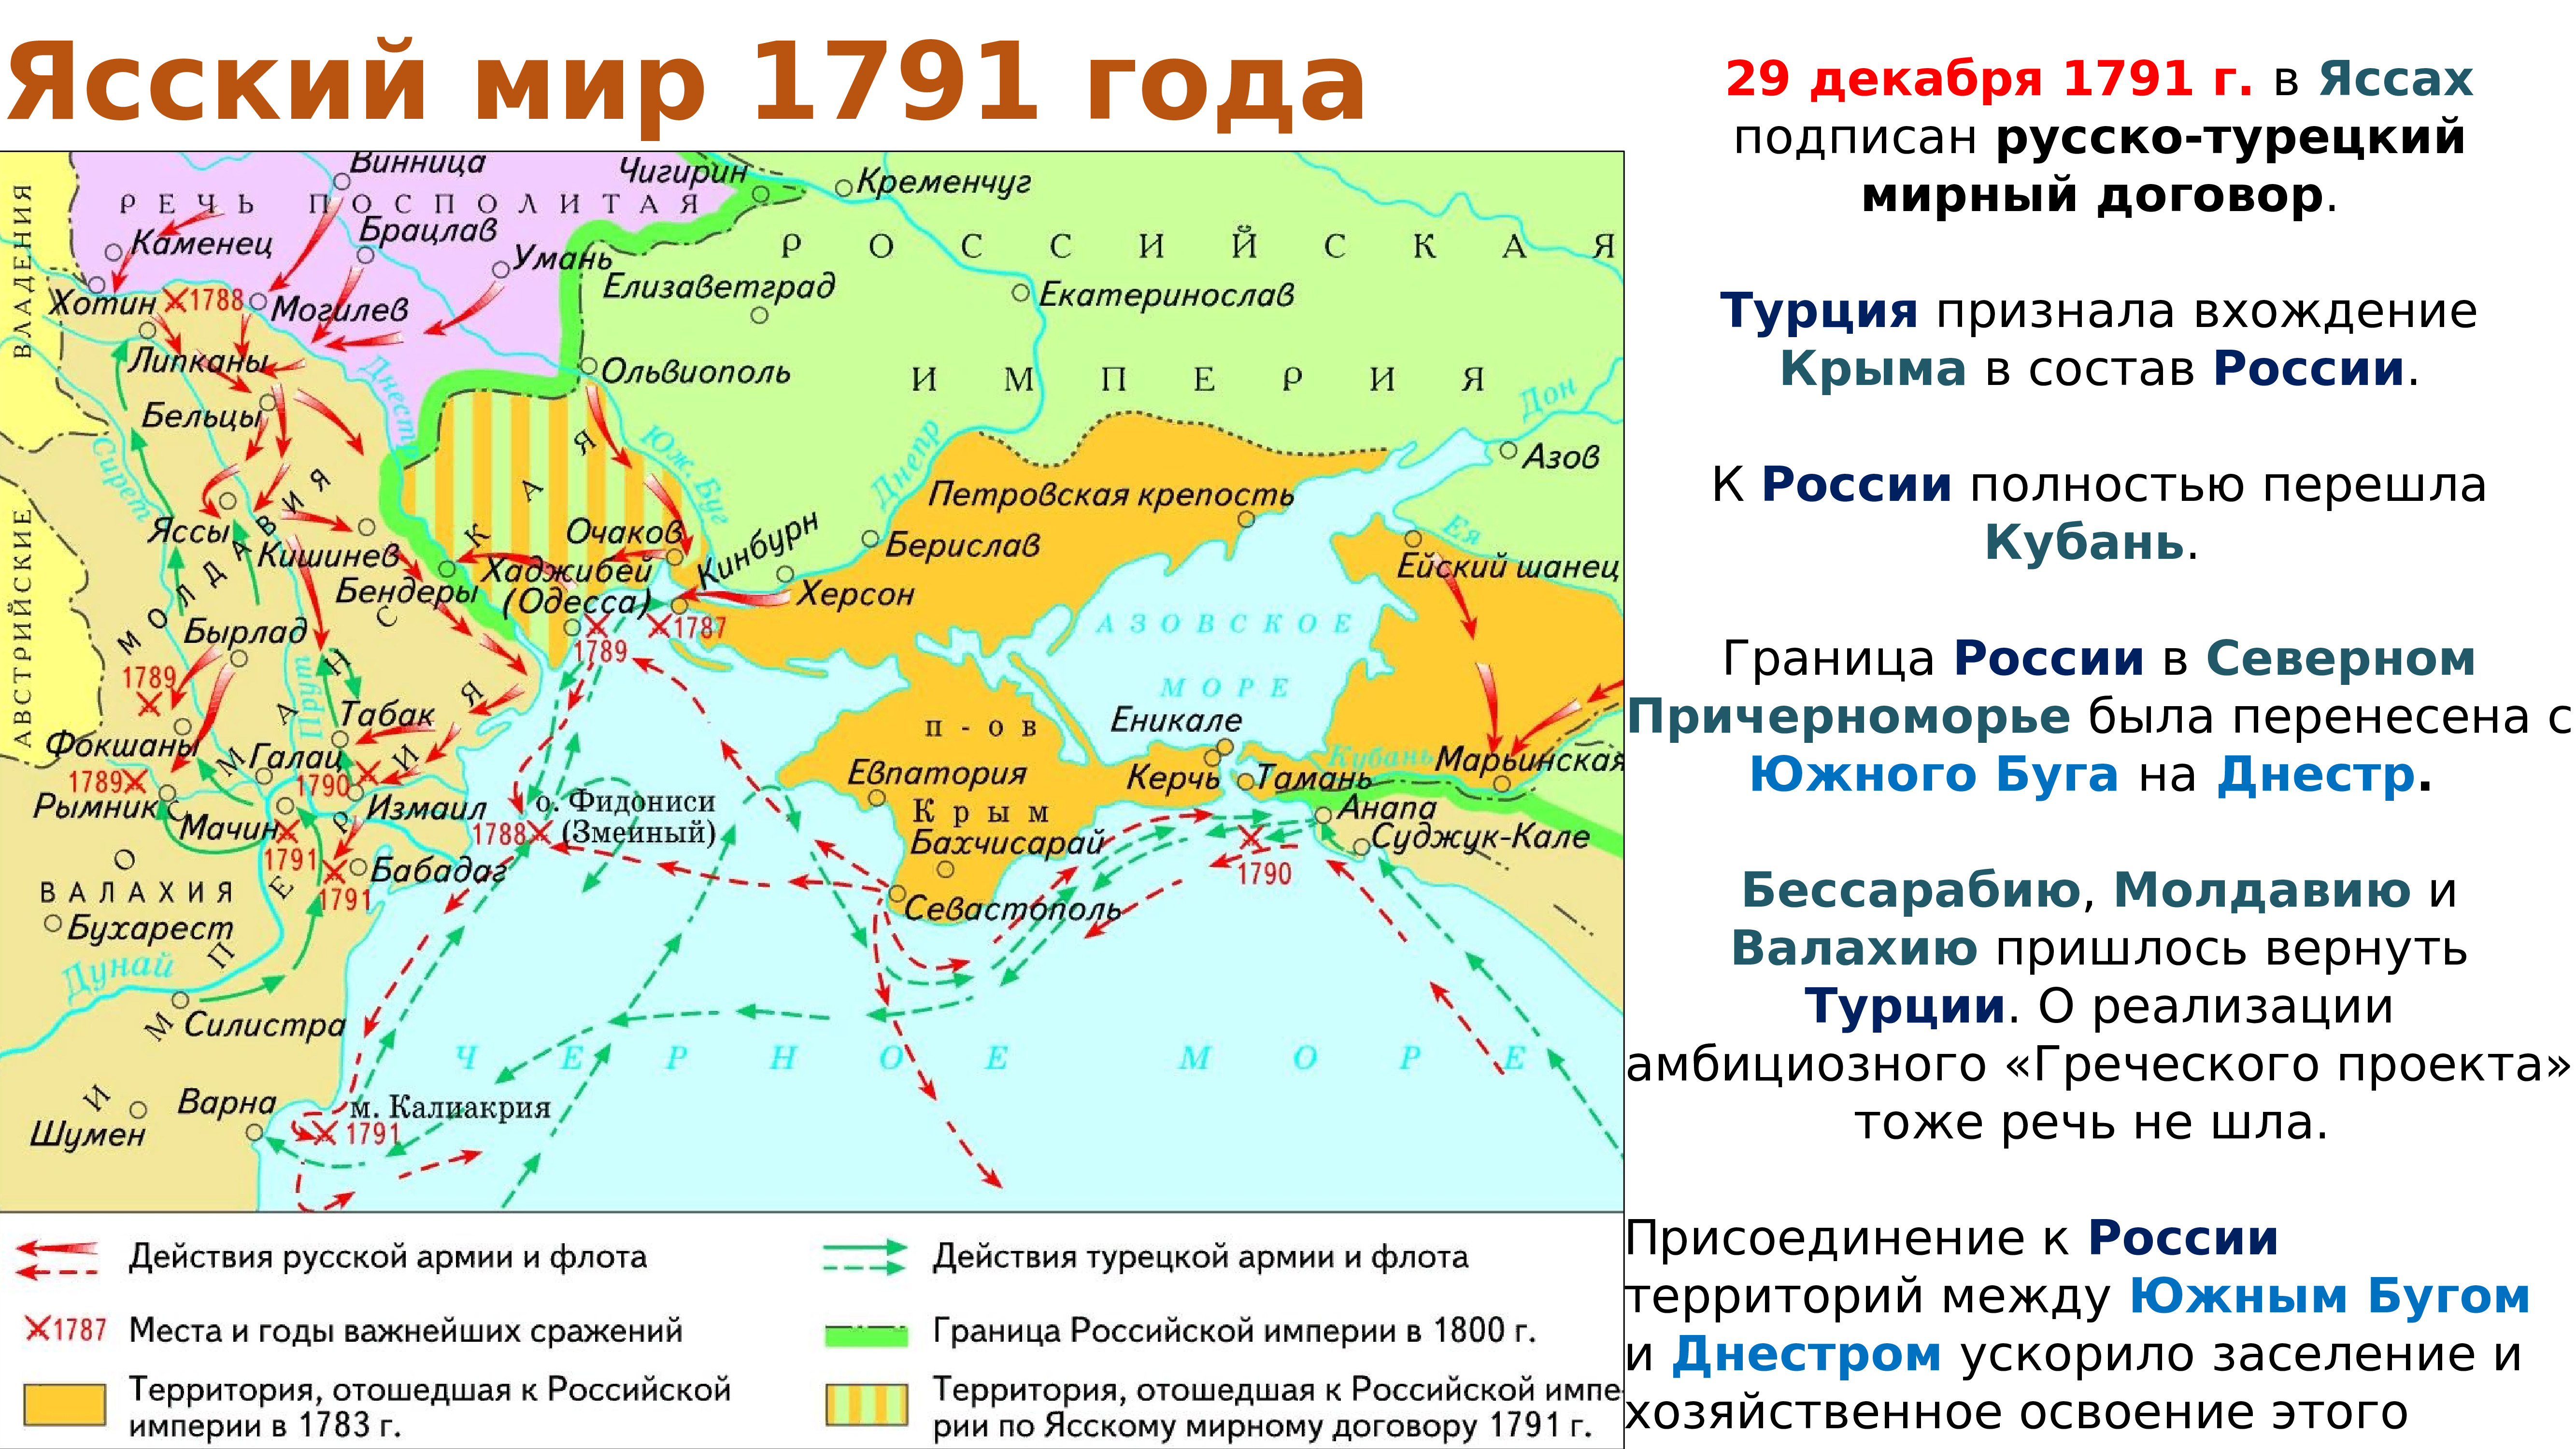 Причины турецкой войны 1787 1791 года. Карта русско-турецкой войны 1787-1791 г.